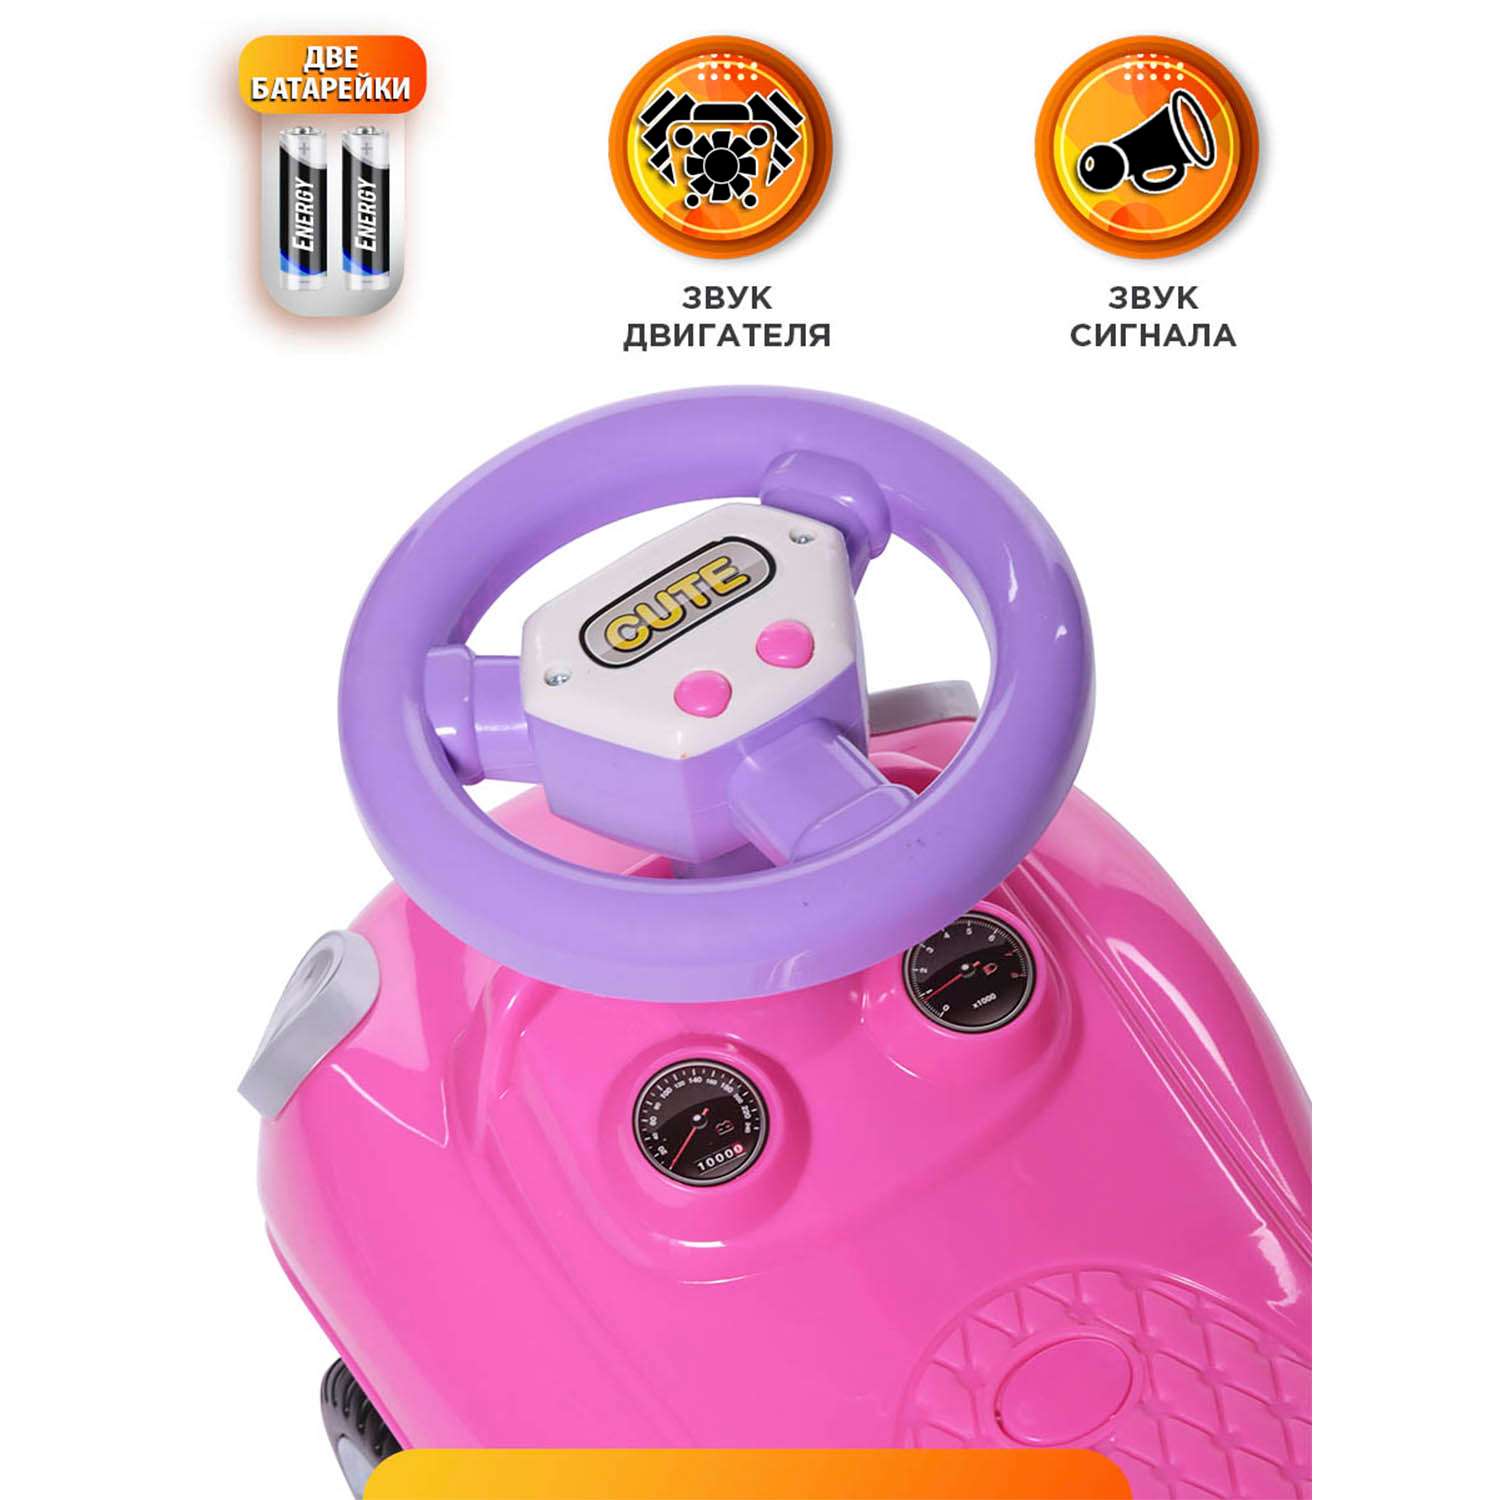 Каталка BabyCare Speedrunner музыкальный руль розовый - фото 5